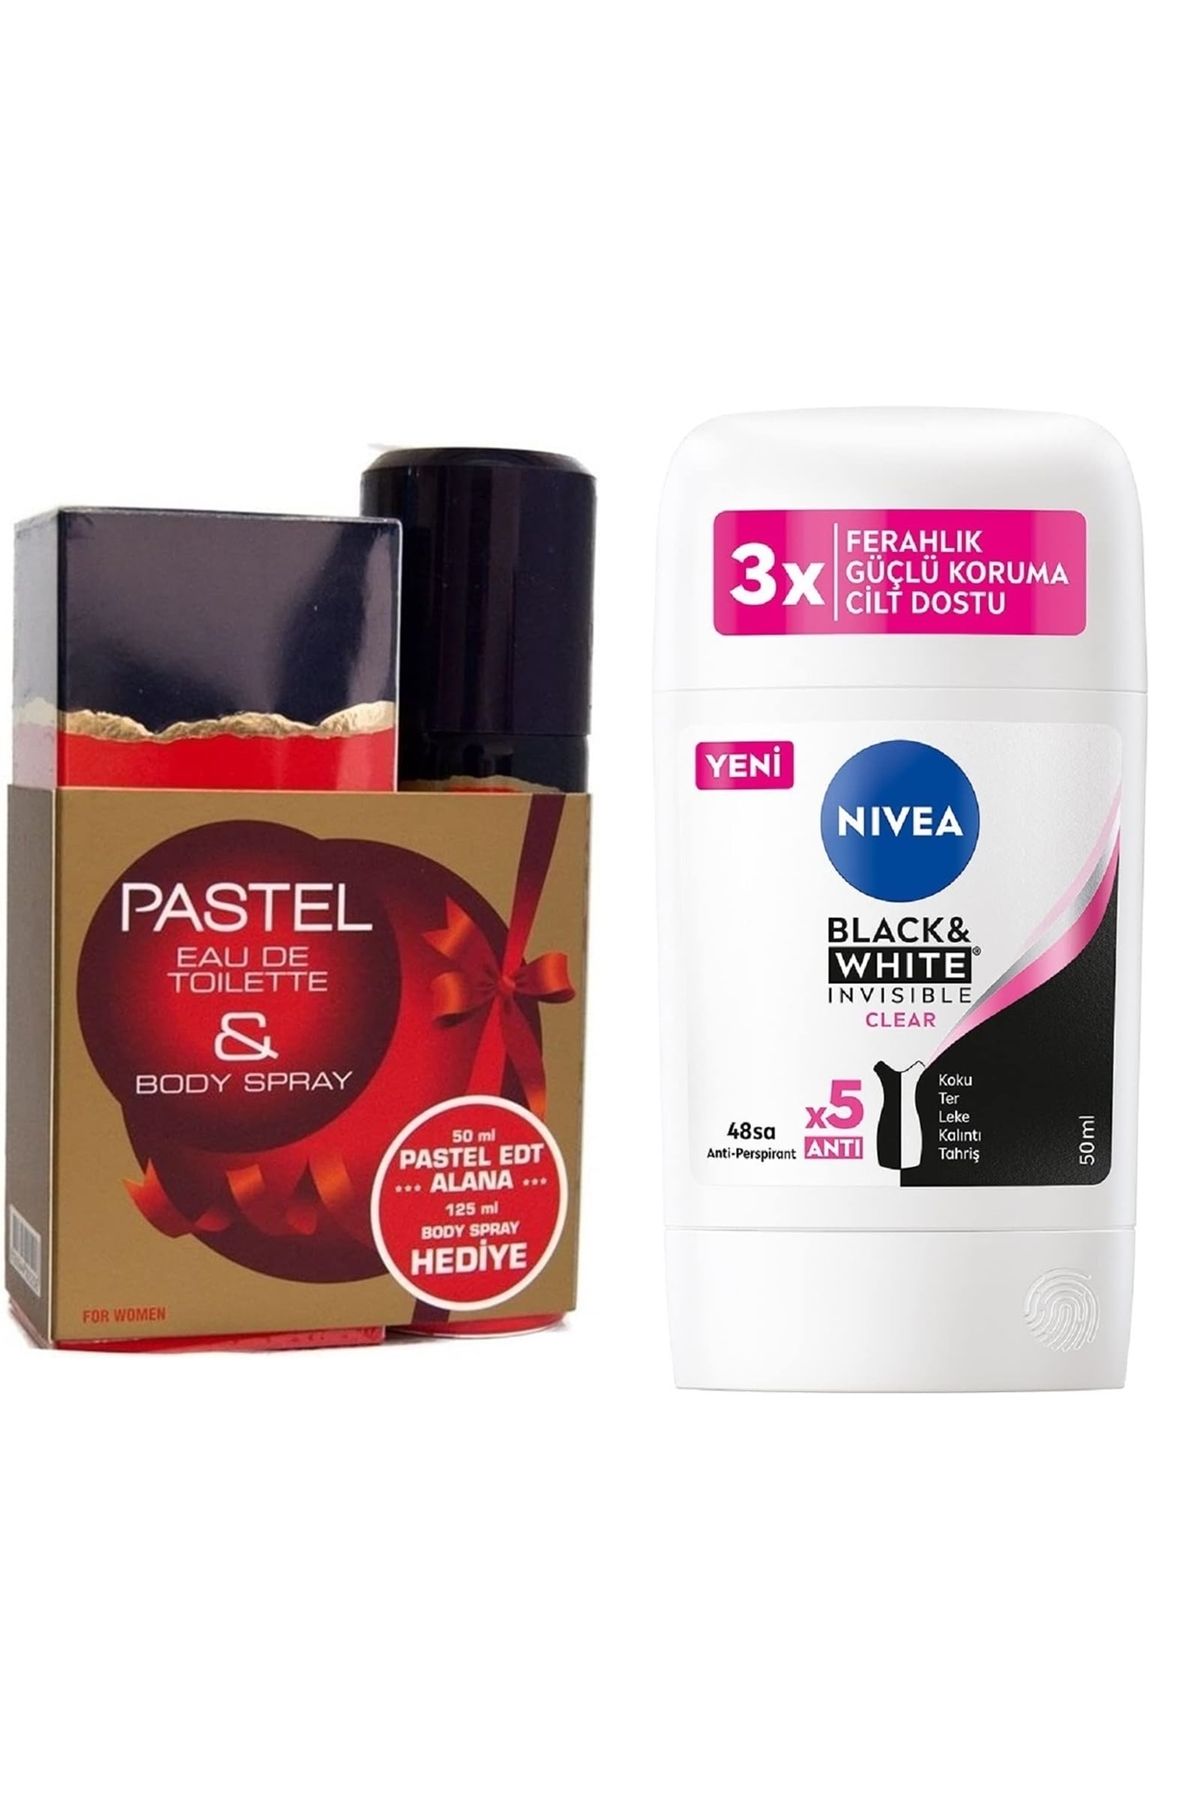 Pastel For Women Edt 50 Ml + 125 Ml Deodorant Kadın Parfüm + NIVEA Kadın Stick Deodorant